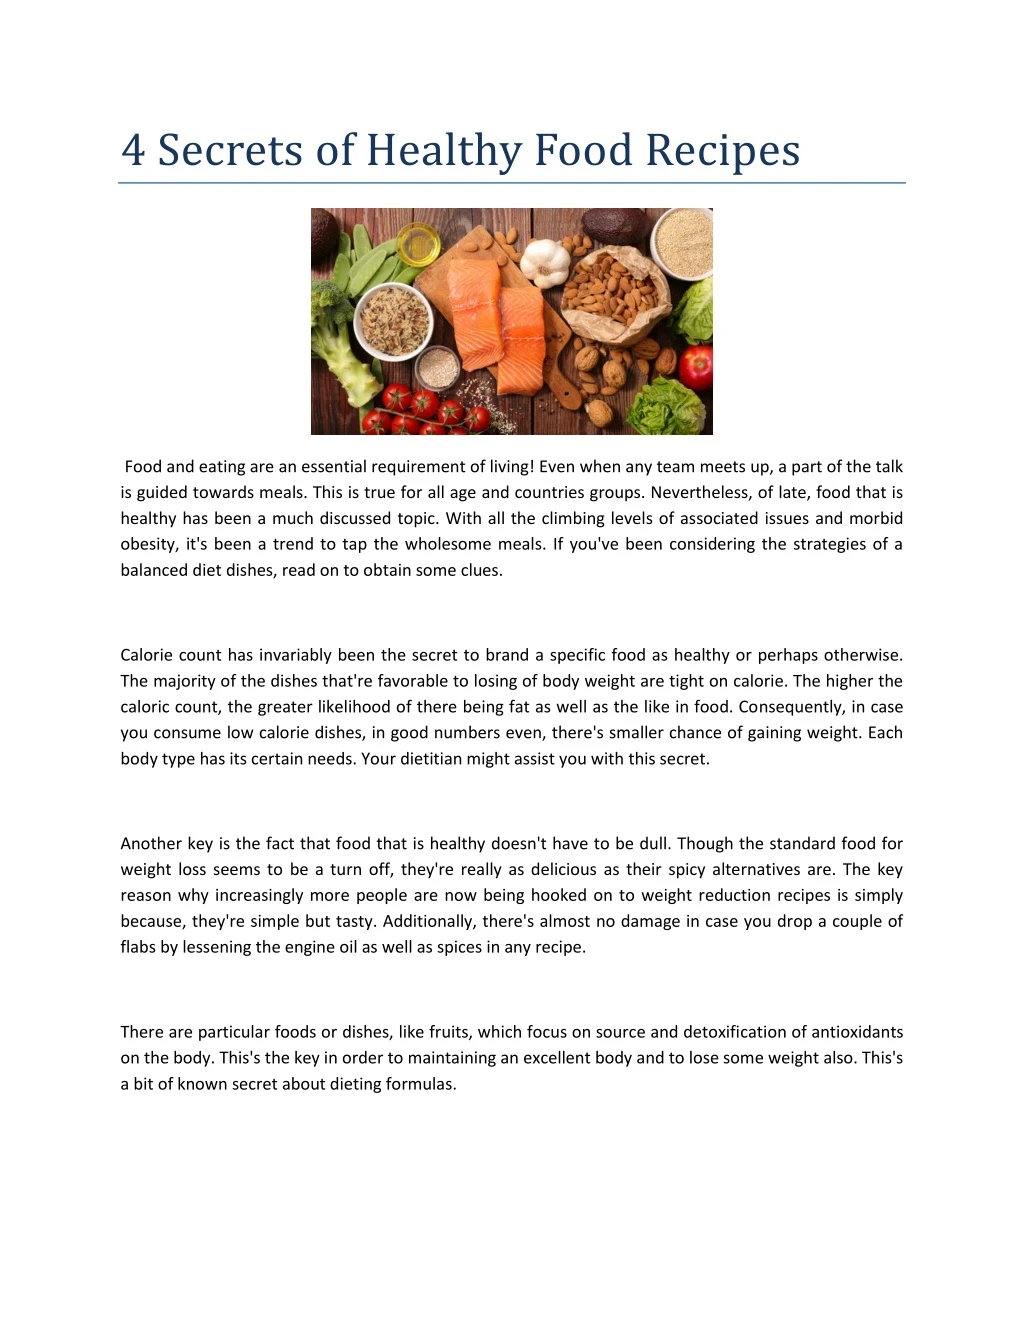 4 secrets of healthy food recipes